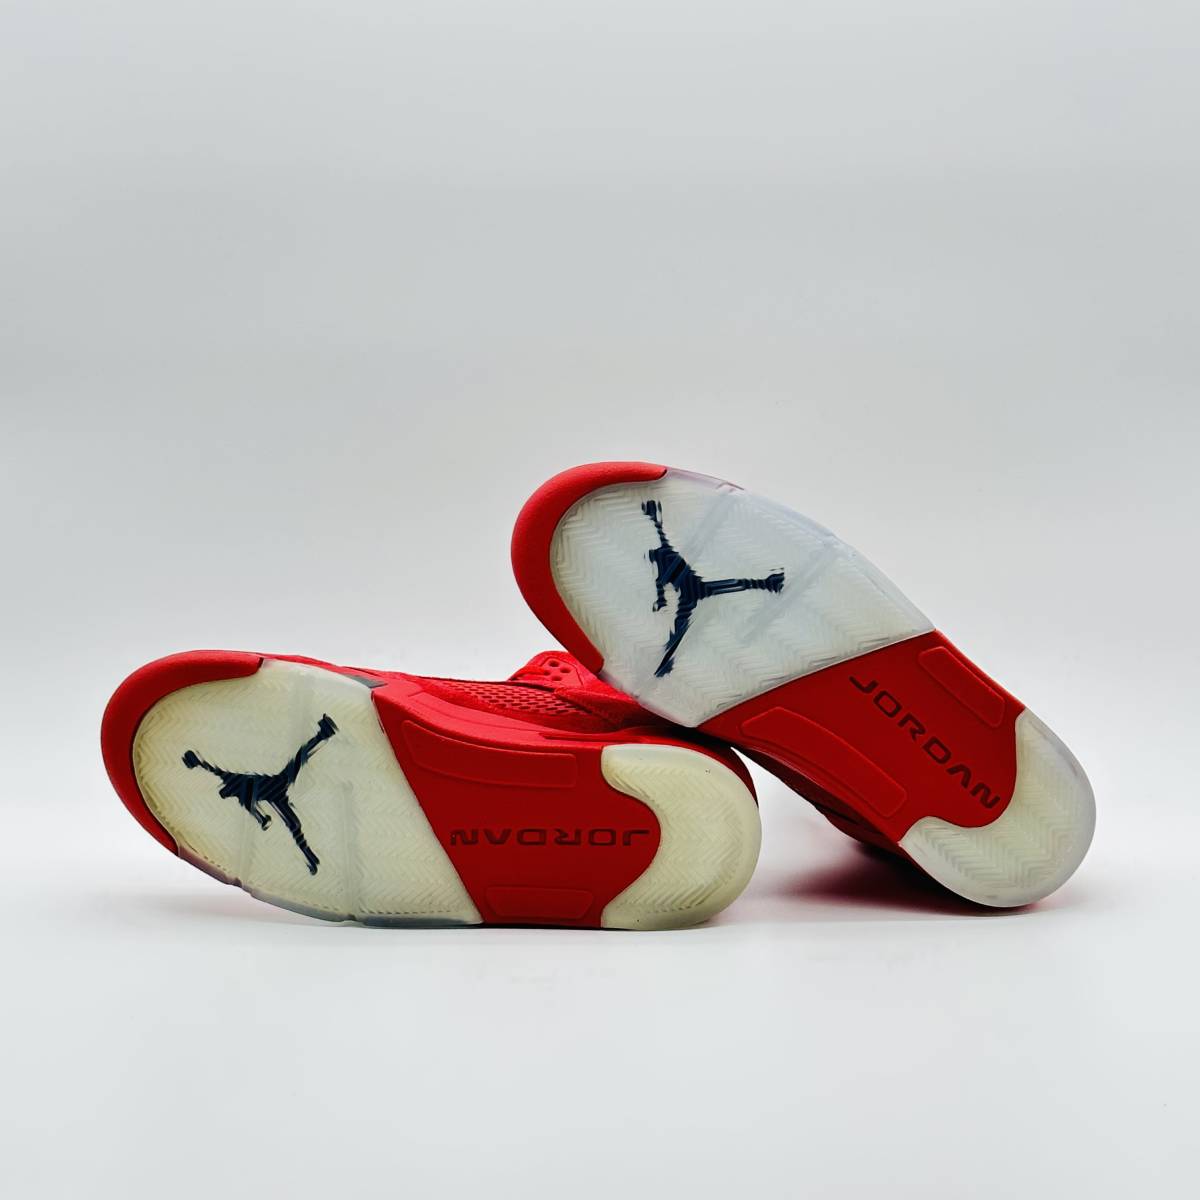 【新品未使用】 Nike Air Jordan 5 Retro Red Suede 136027-602 28cm ナイキ エアジョーダン5 レトロ レッド スエード_画像5